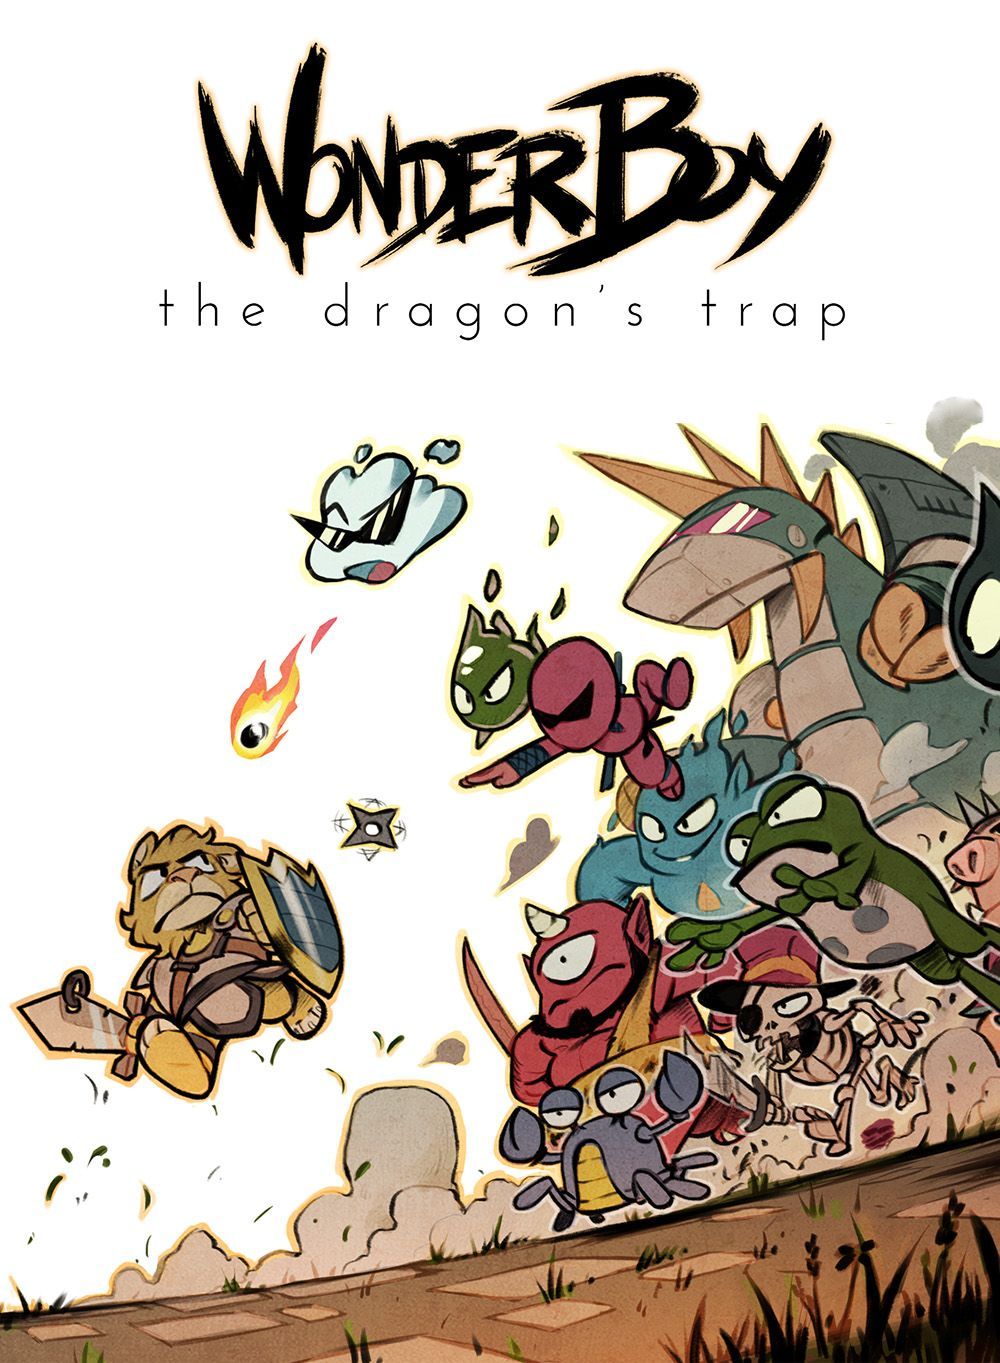 Wonder Boy : The Dragon's Trap